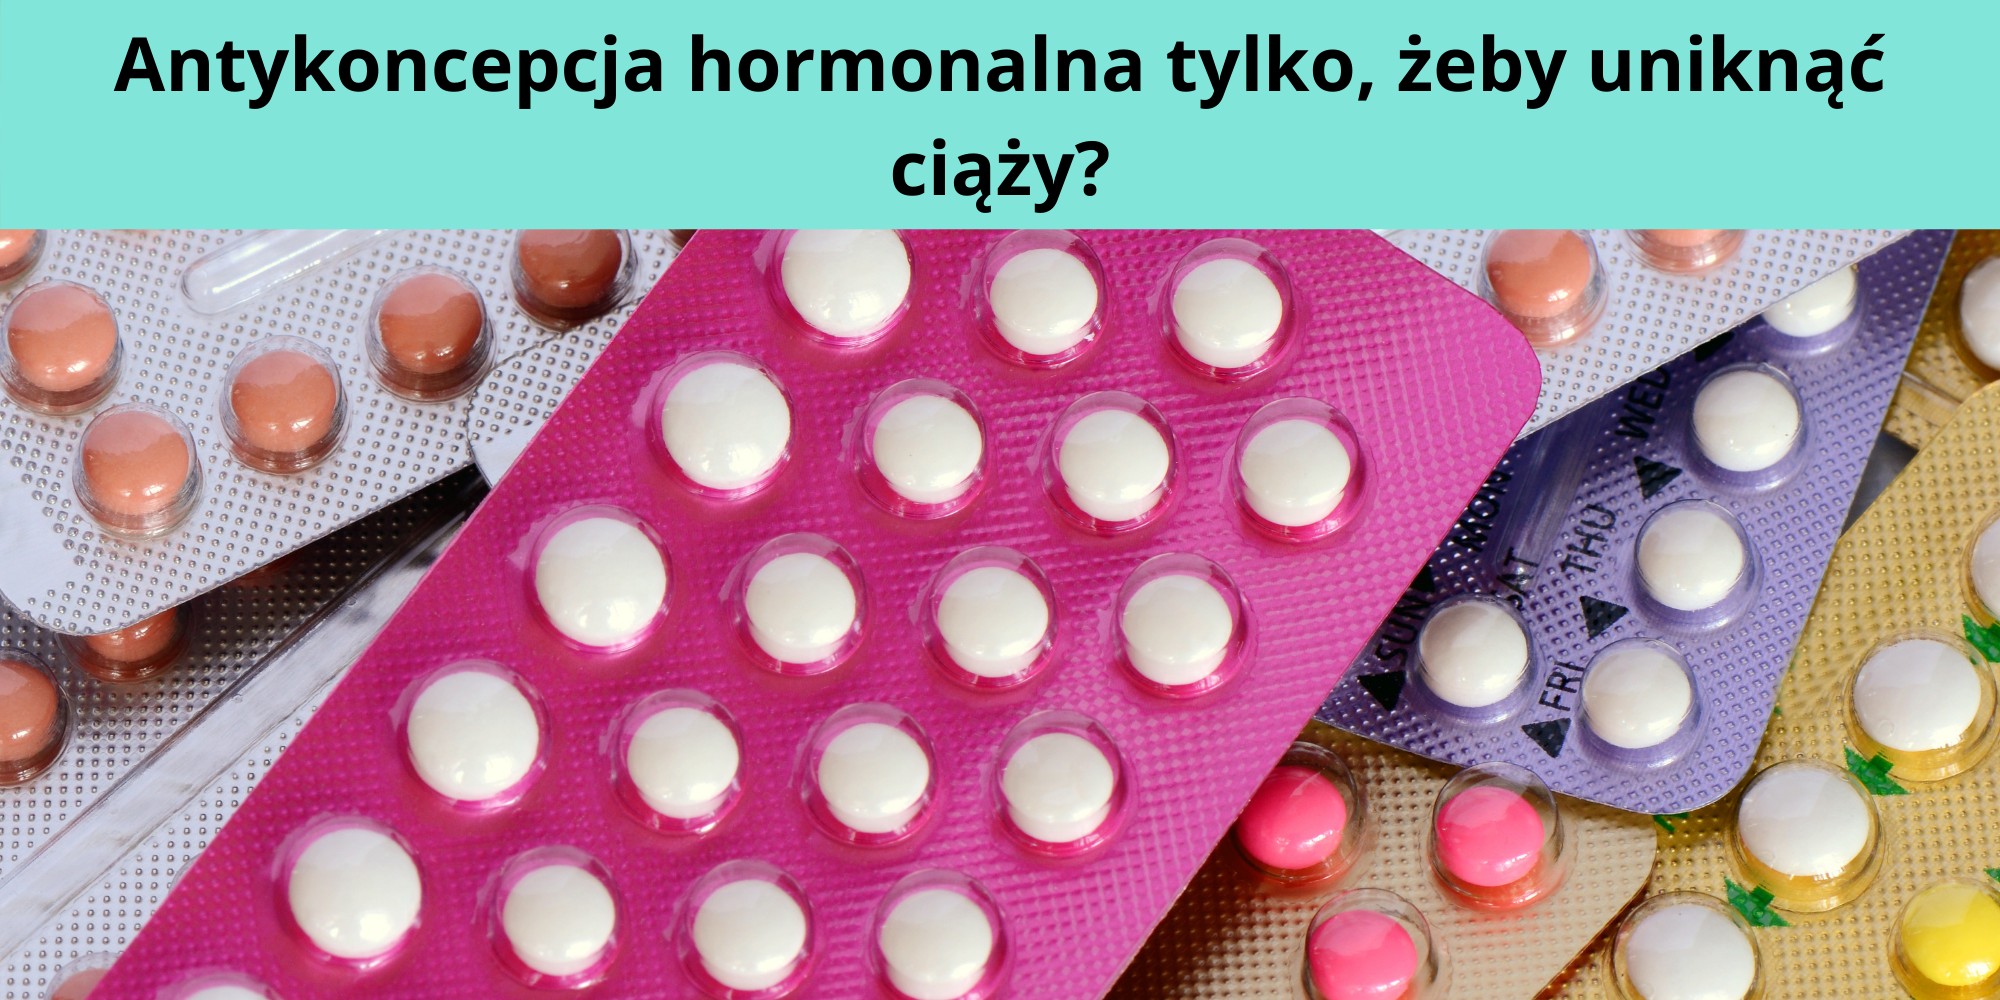 Antykoncepcja hormonalna tylko, żeby uniknąć ciąży